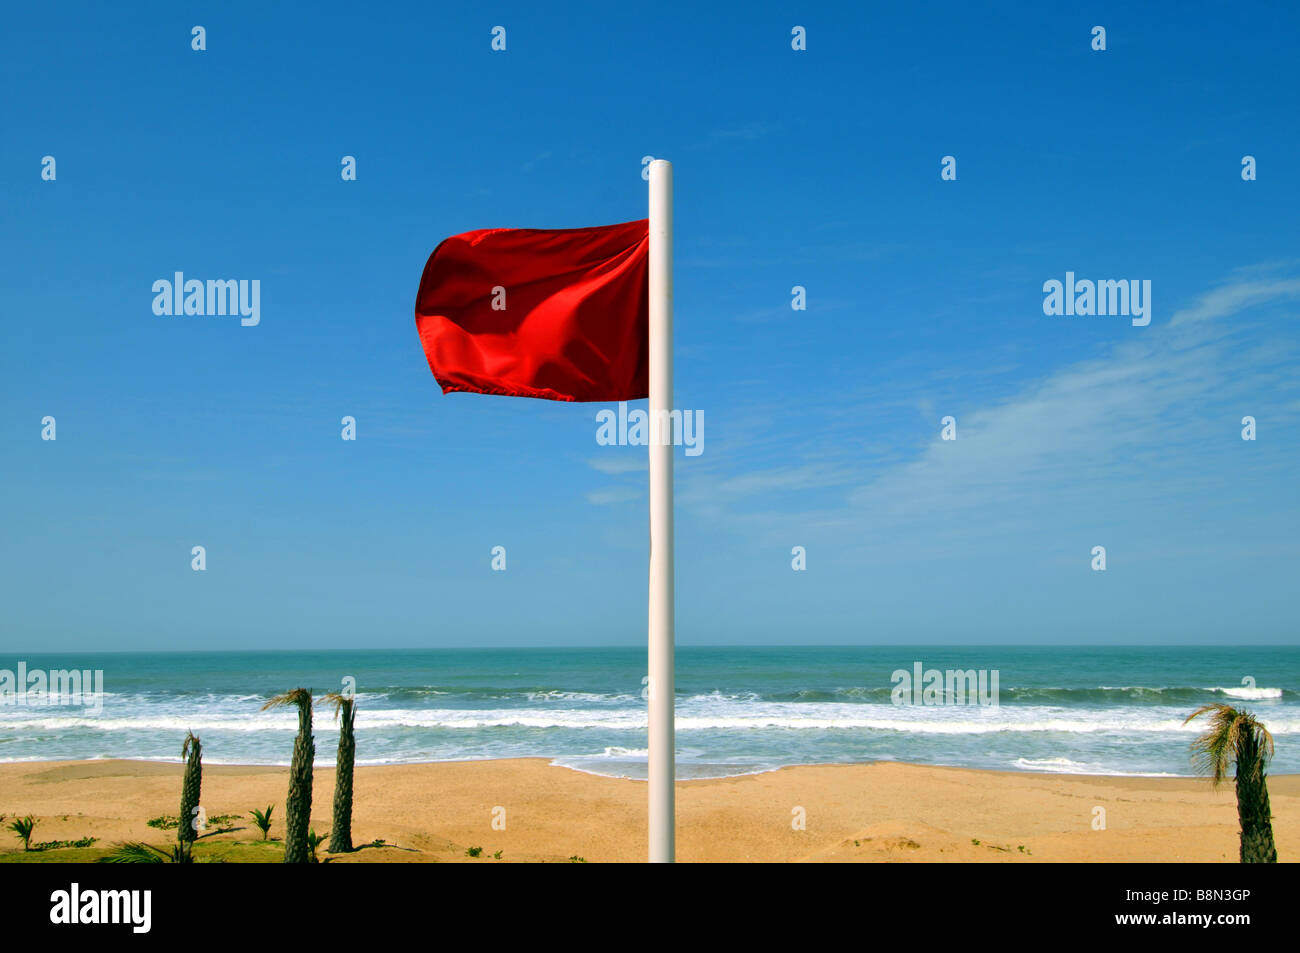 Bandiera rossa volando ad una spiaggia avviso di non entrare in acqua, Gambia, Africa occidentale Foto Stock